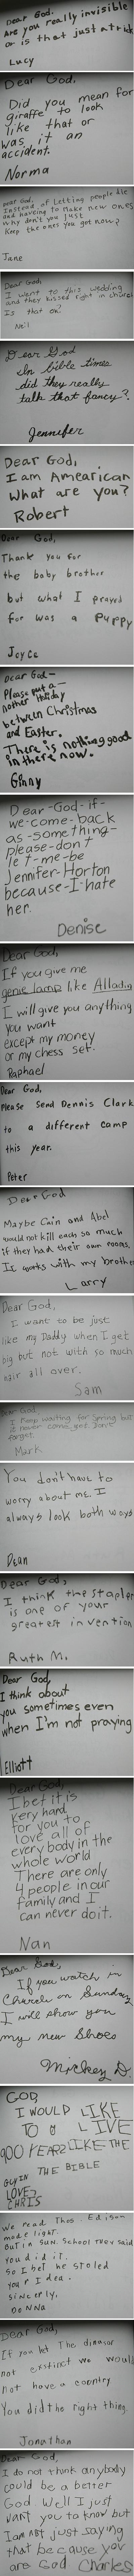 23 cartas graciosas de niños a Dios